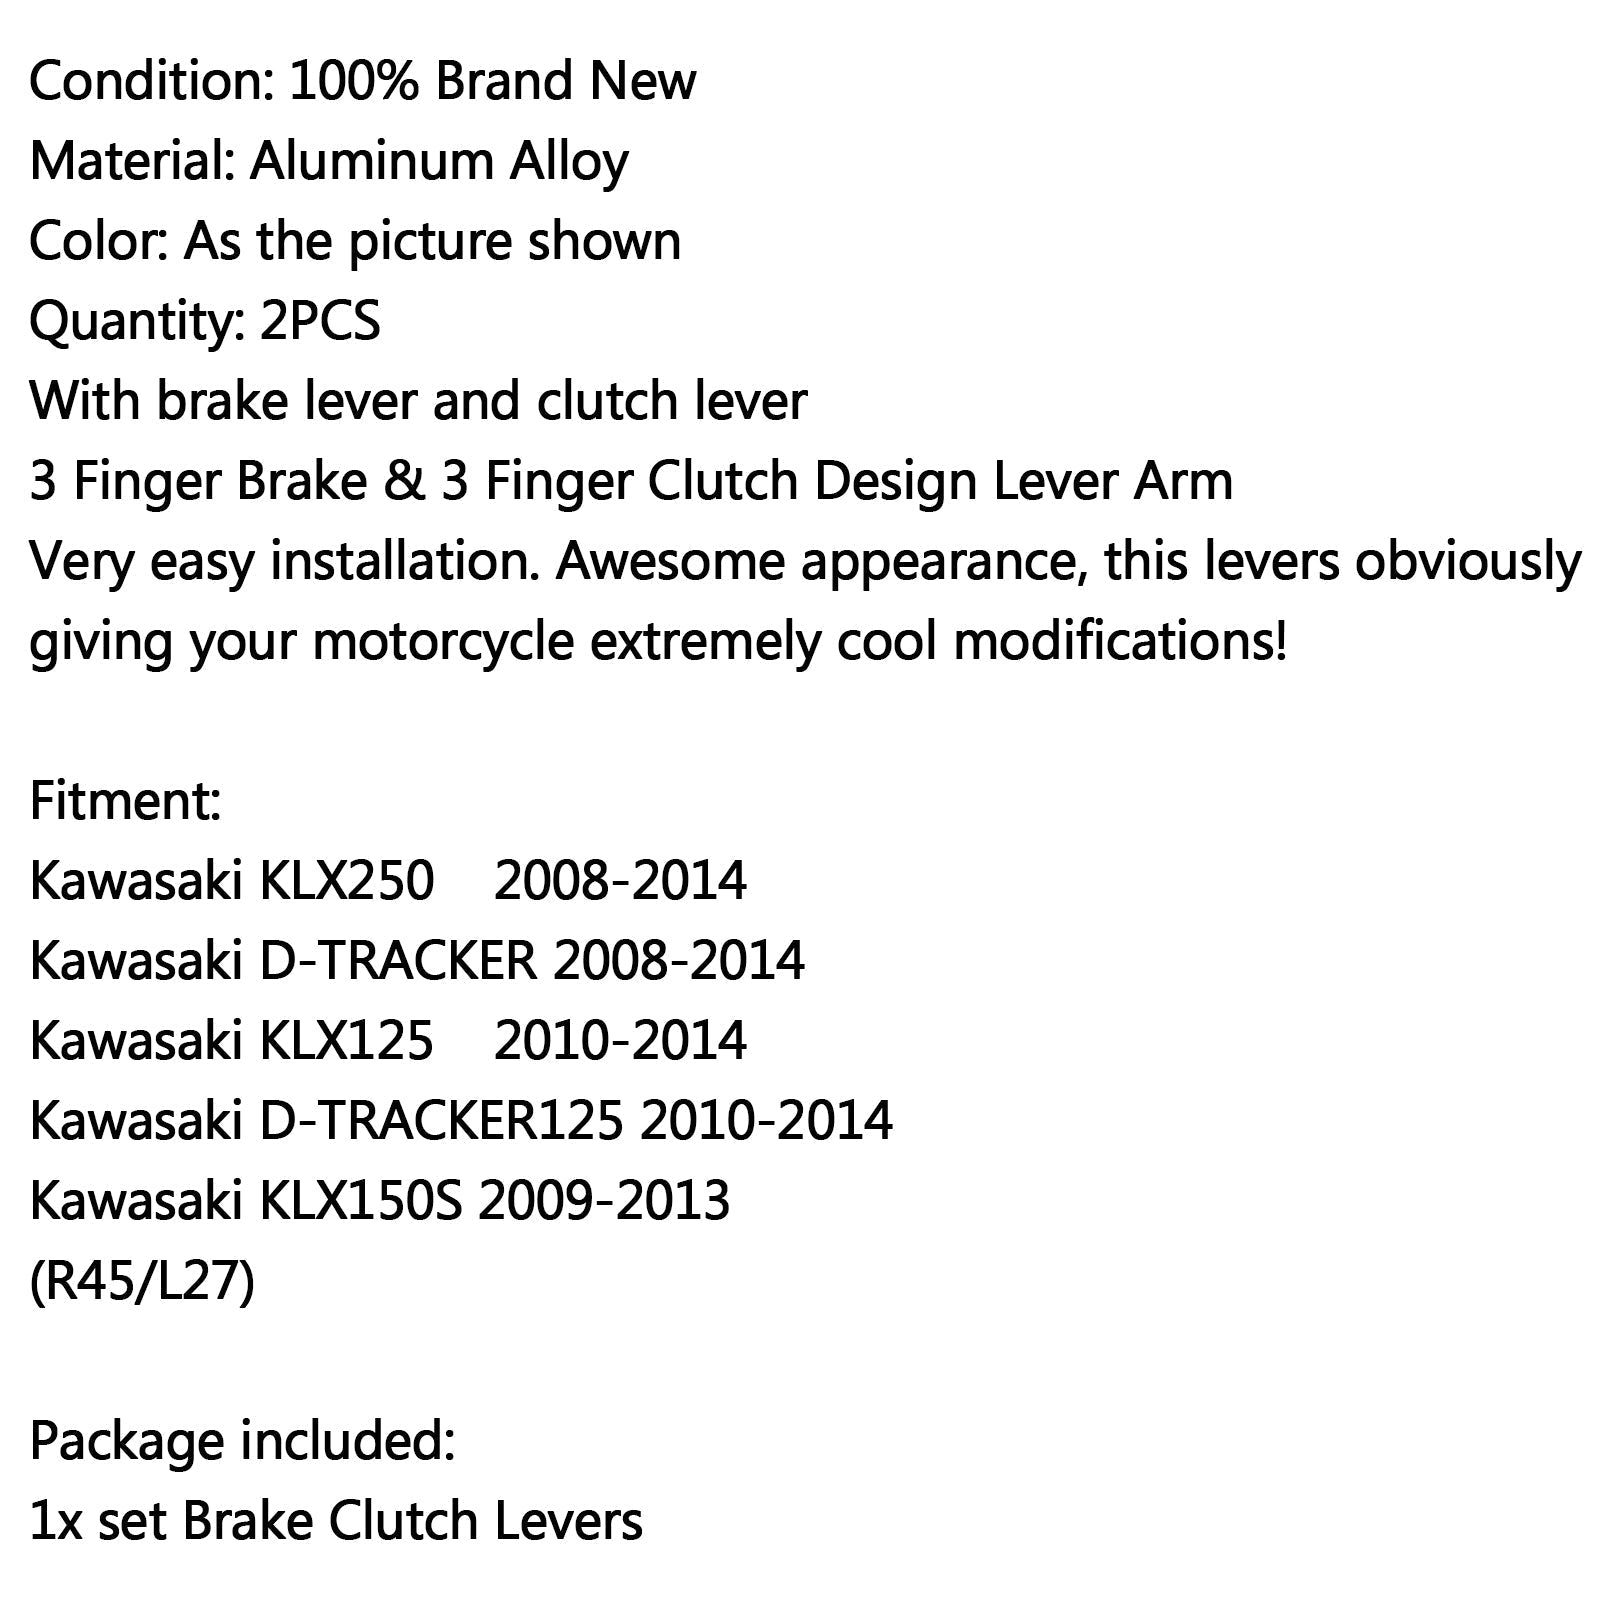 Palancas de embrague de freno giratorias aptas para Kawasaki KLX250/D-TRACKER KLX150S KLX125 genérico